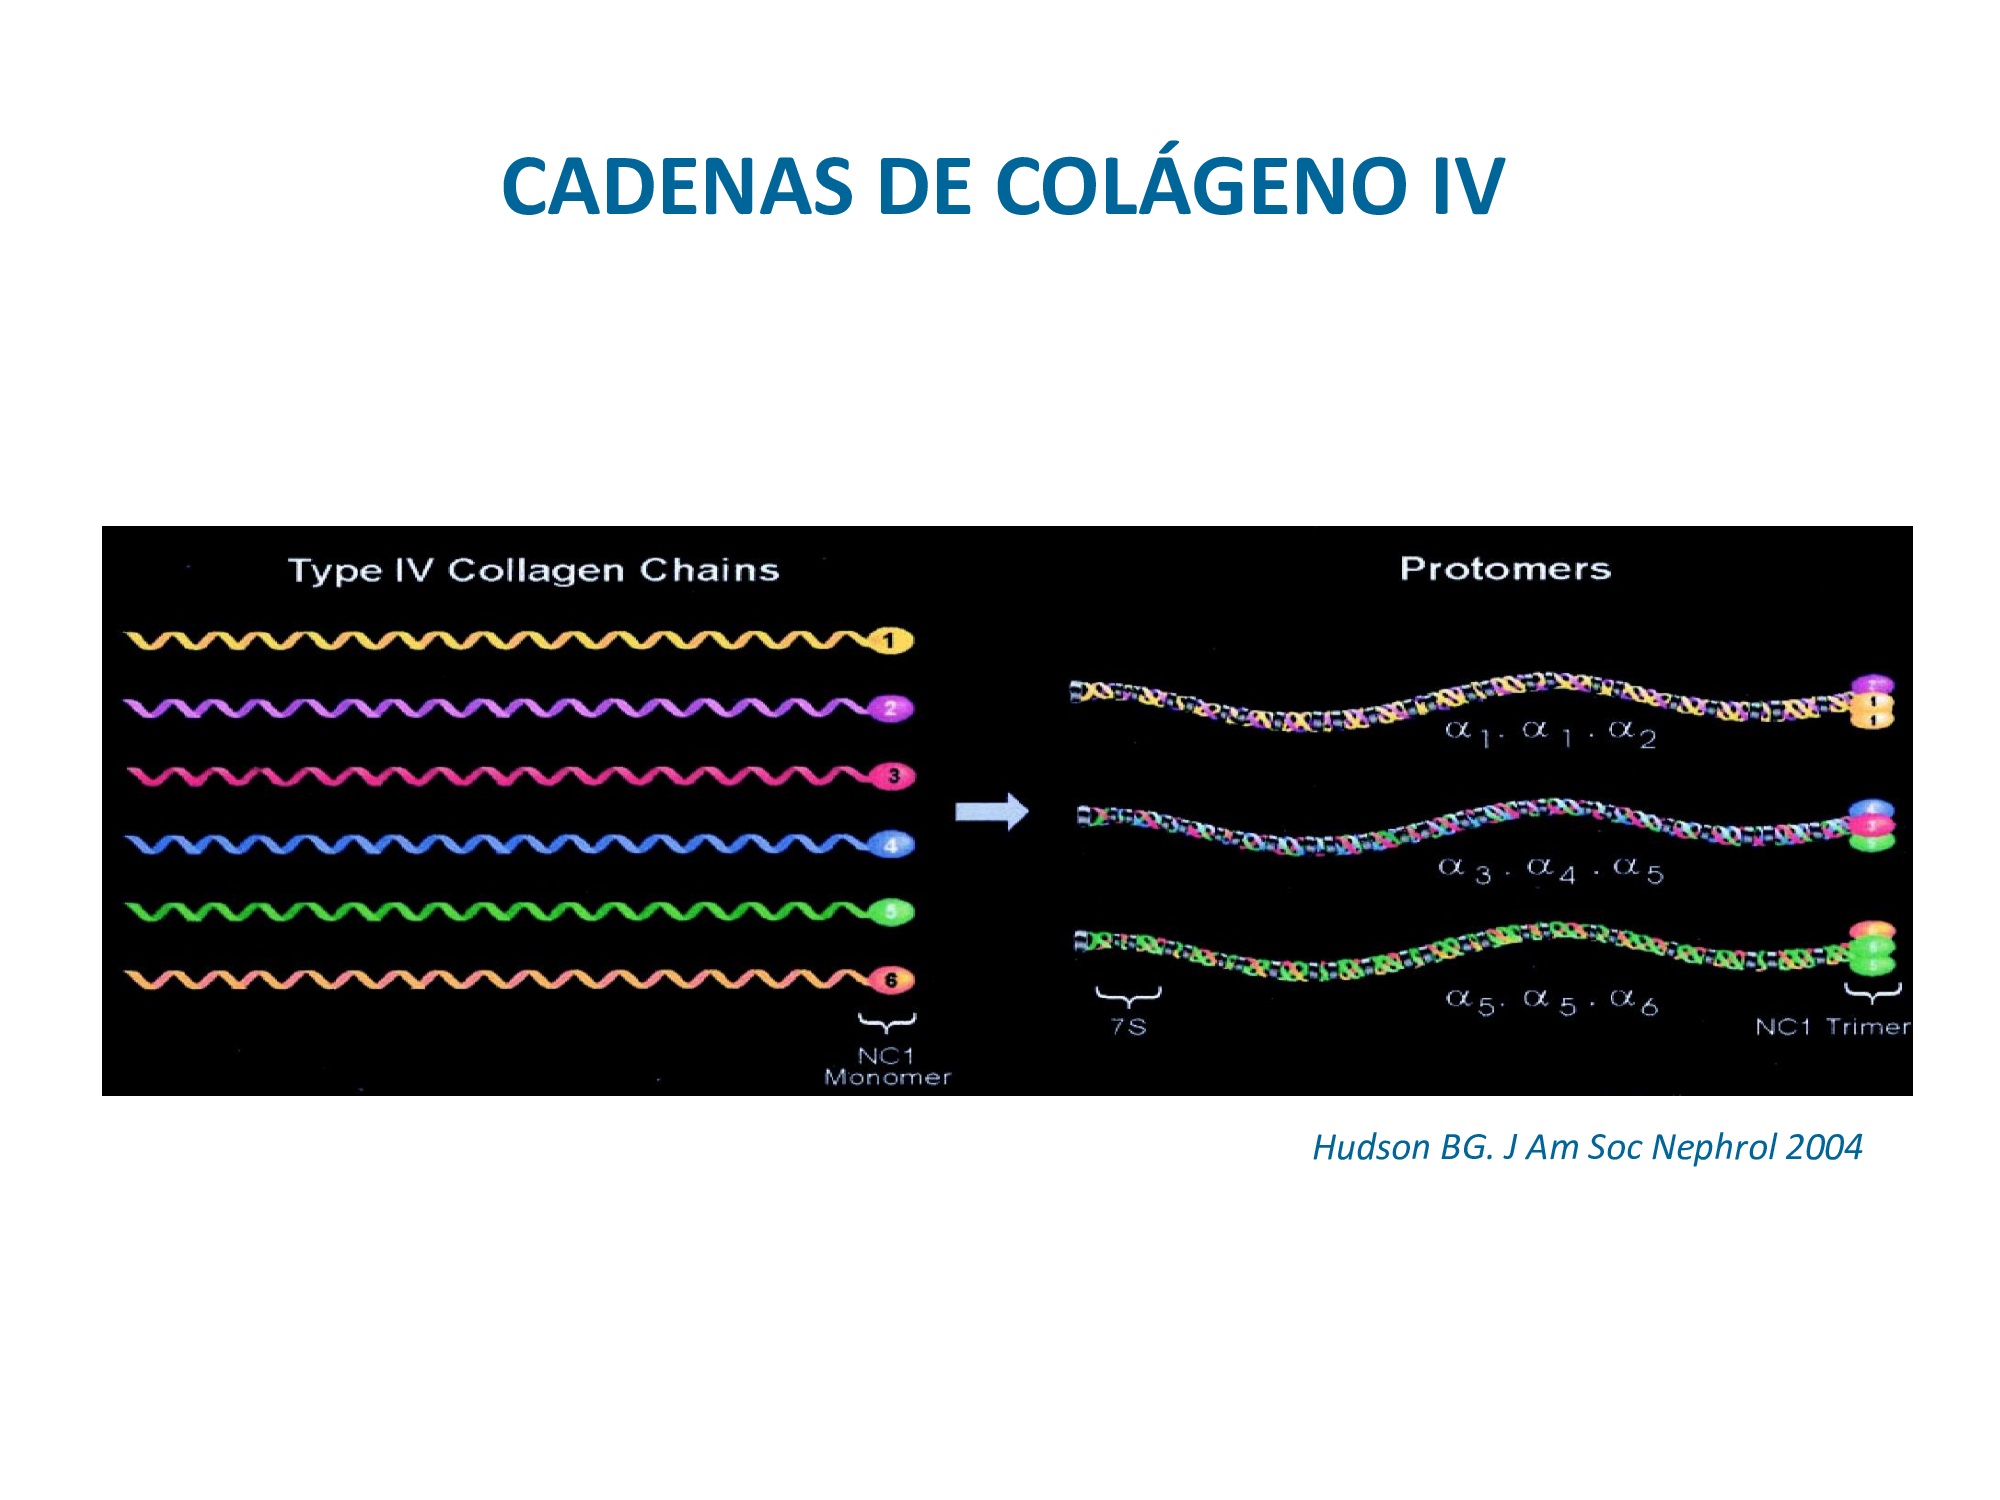 Las cadenas de colágeno IV se ensamblan en trímeros de acuerdo con la figura de la derecha